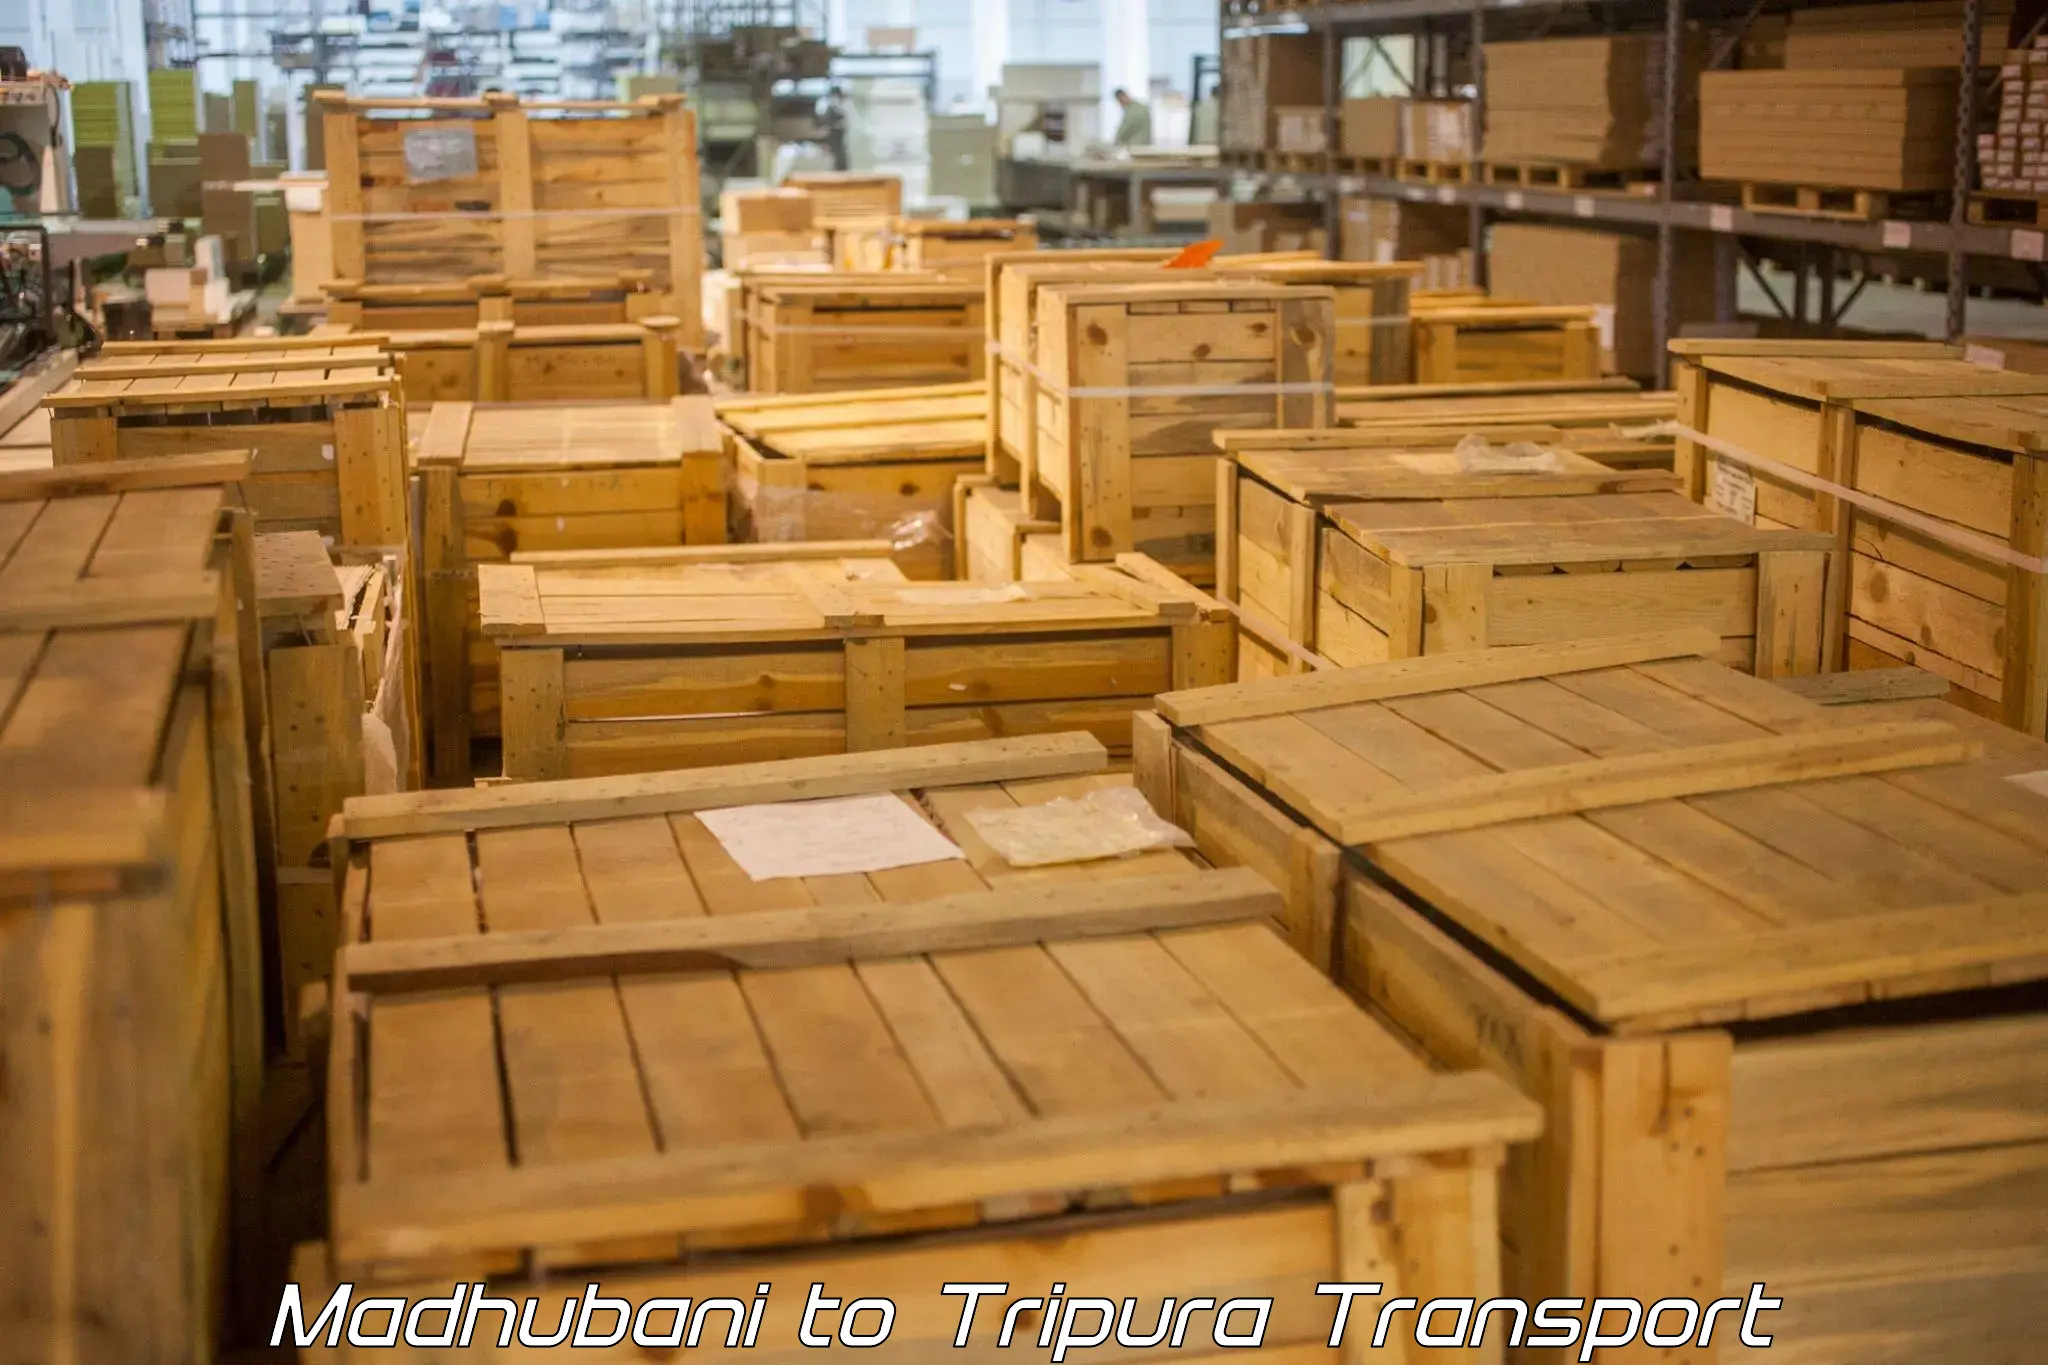 Cargo transport services Madhubani to Udaipur Tripura